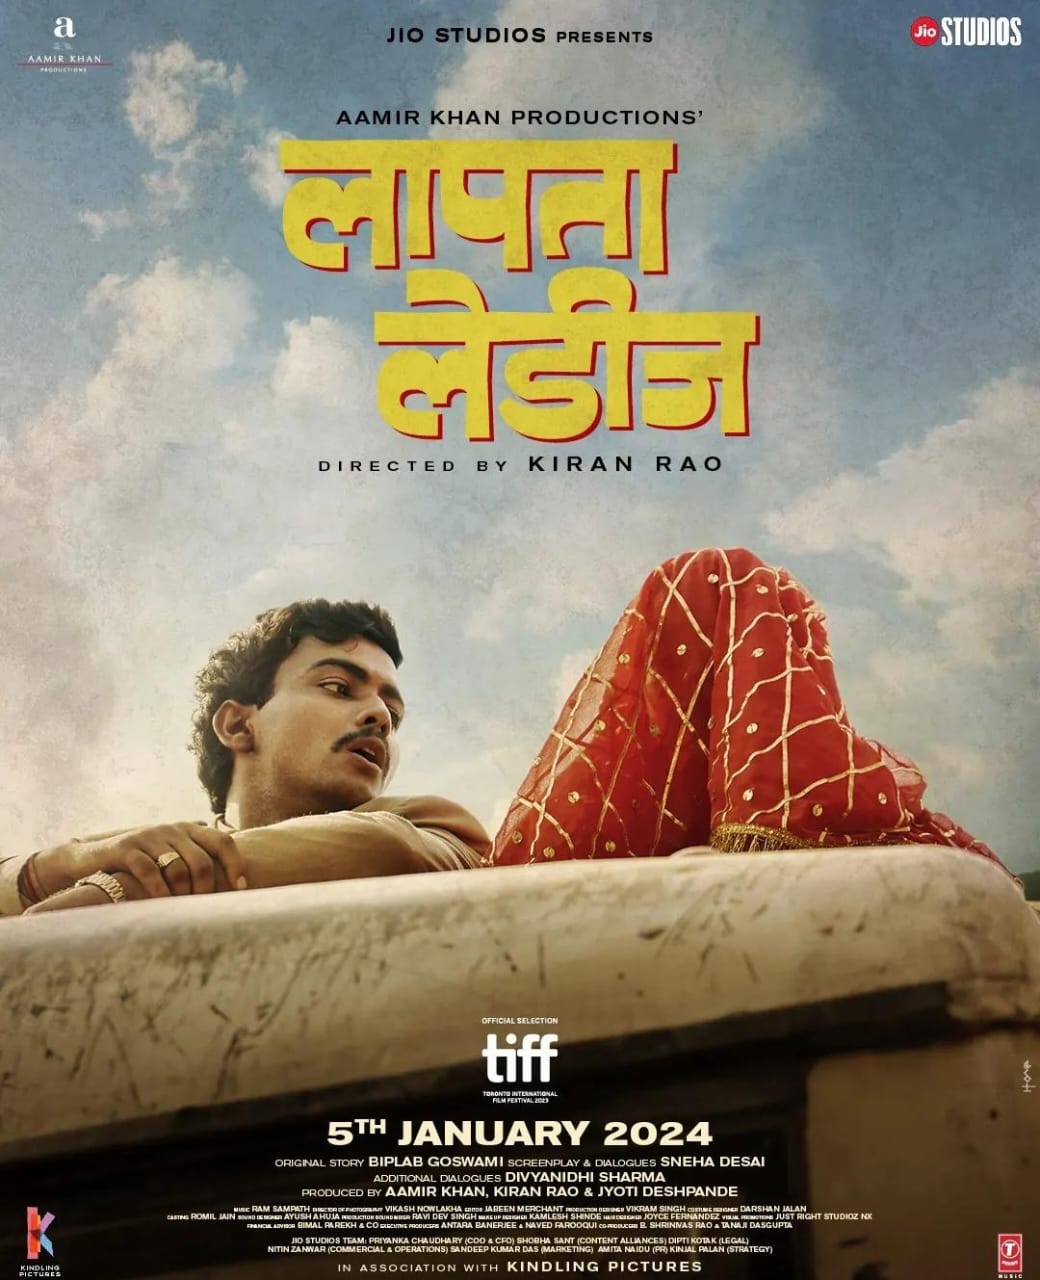 इंटरनेशनल फिल्म फेस्टिवल में ‘लापता लेडीज़’ को मिली शानदार प्रतिक्रिया से बेहद खुश हैं आमिर खान और किरण राव